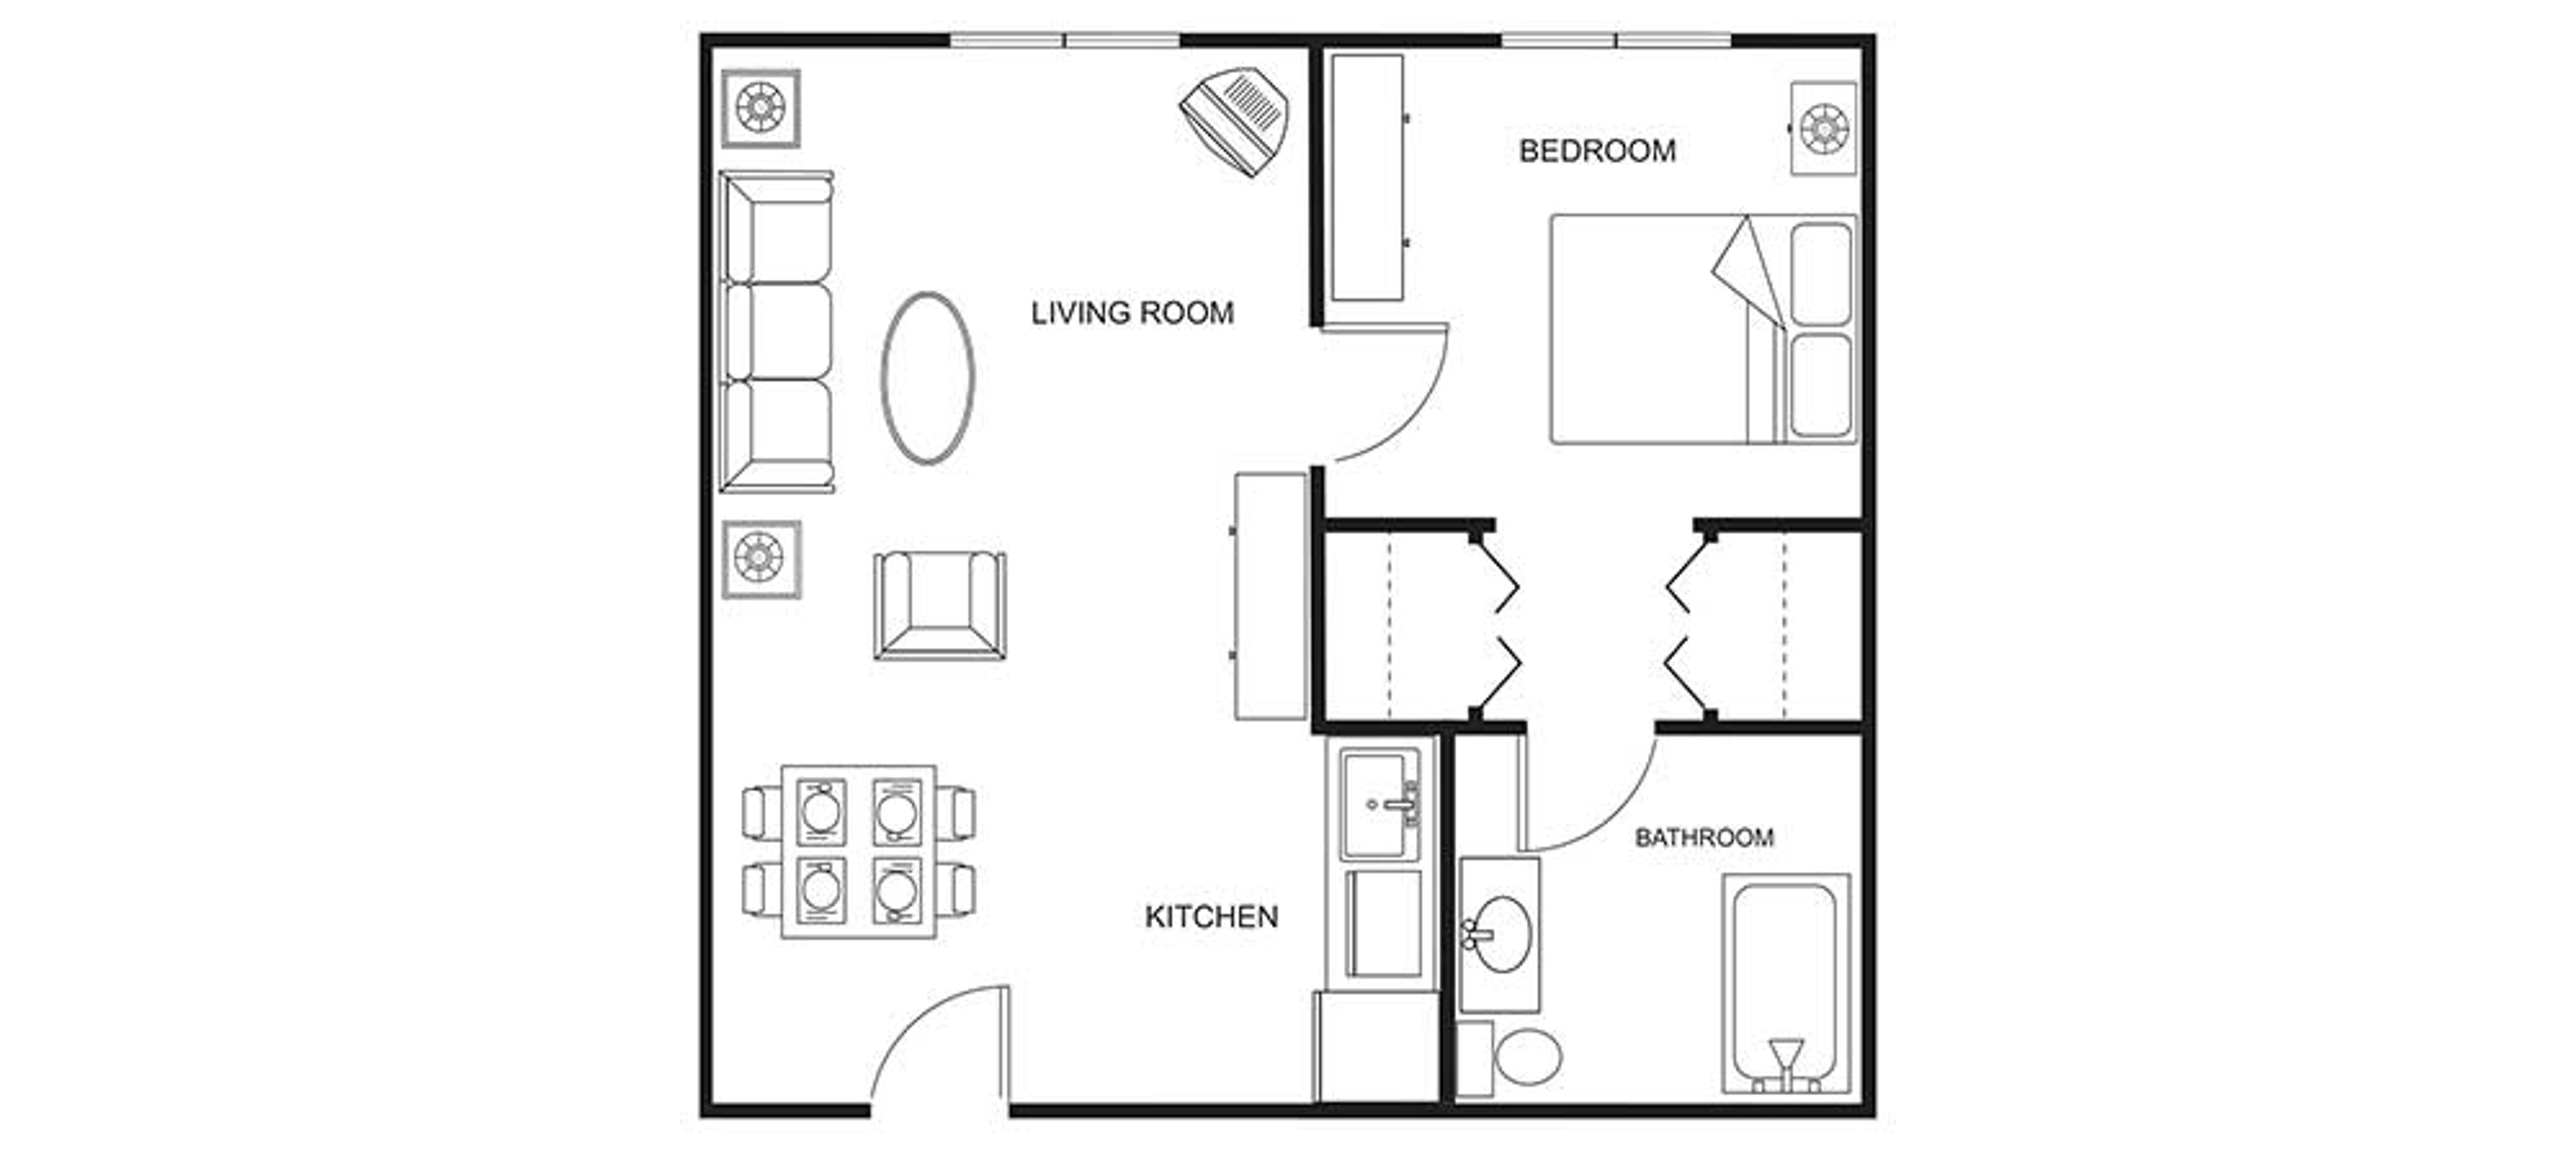 Floorplan - Clearwater Springs - 1B 1B 575 sqft Assisted Living